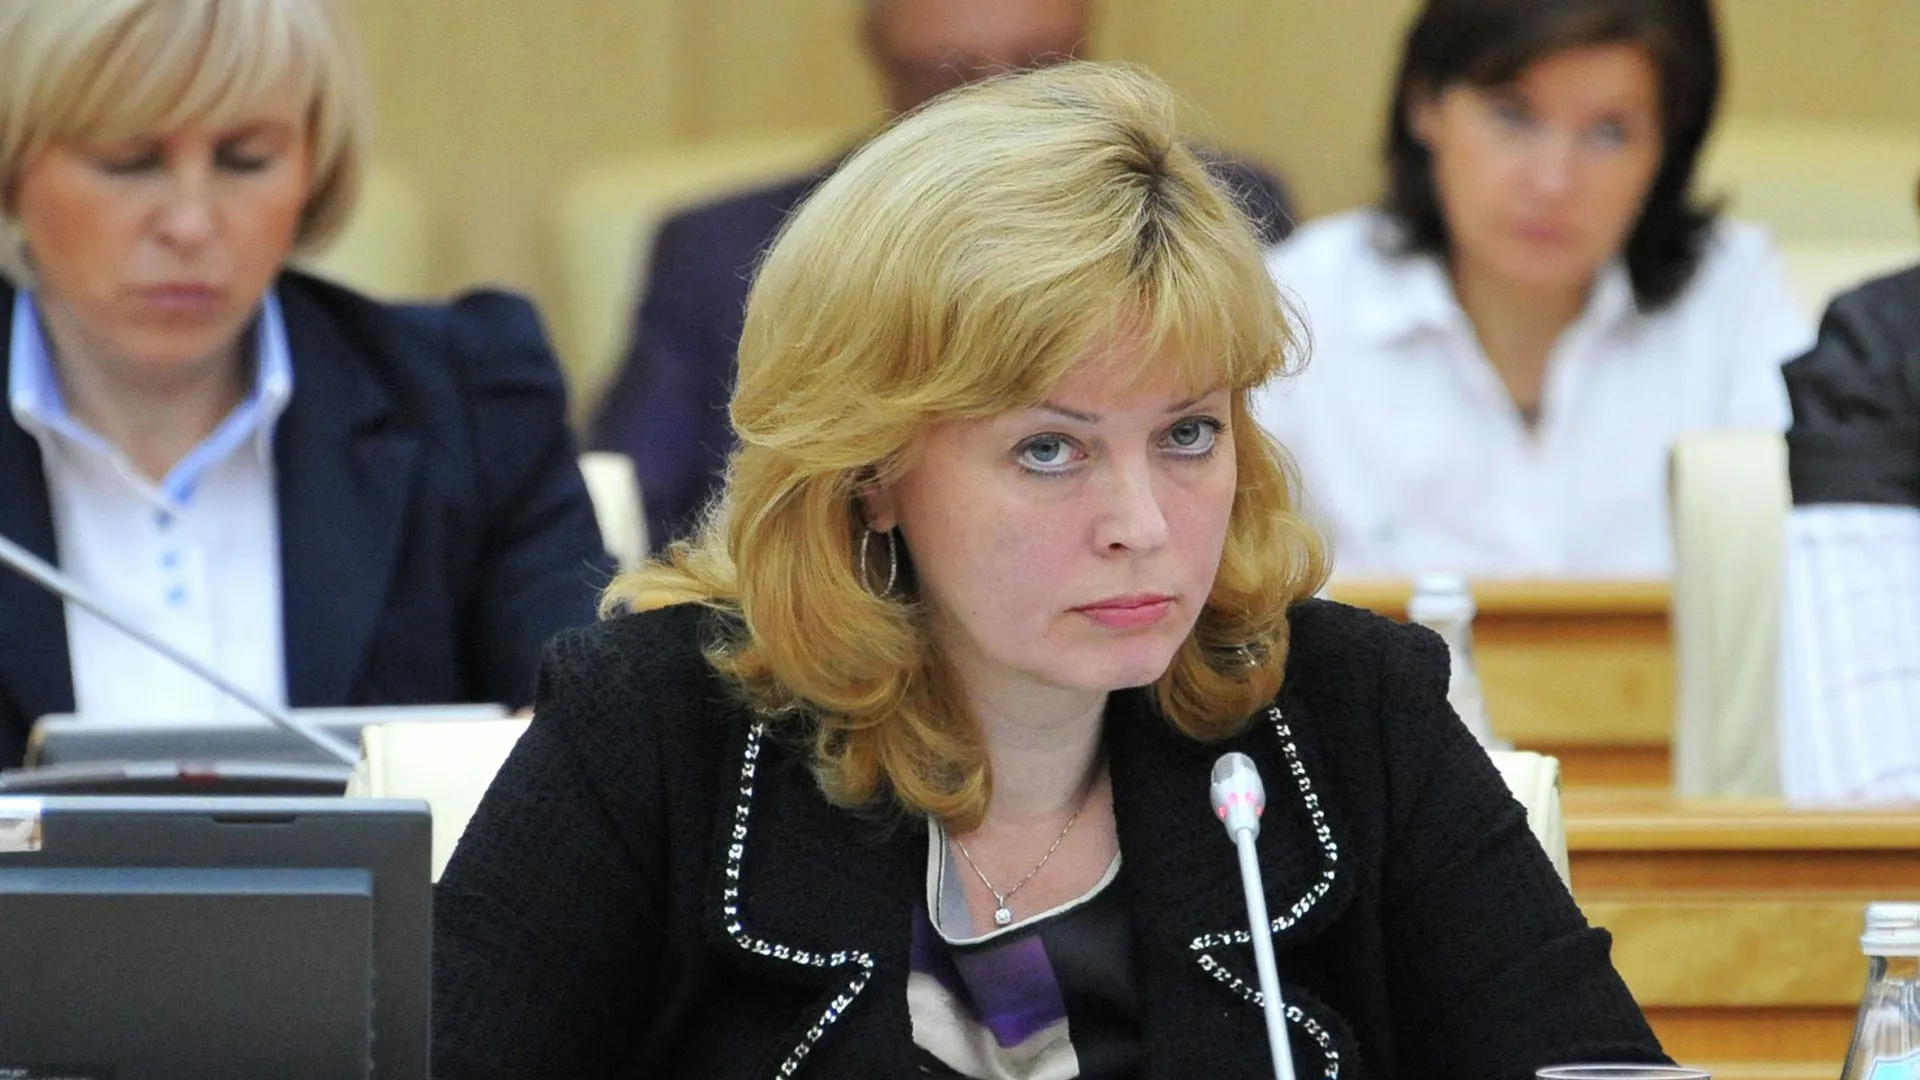 ВРП Подмосковья в 2014 г вырастет почти на 3%, до 2,9 трлн руб — министр